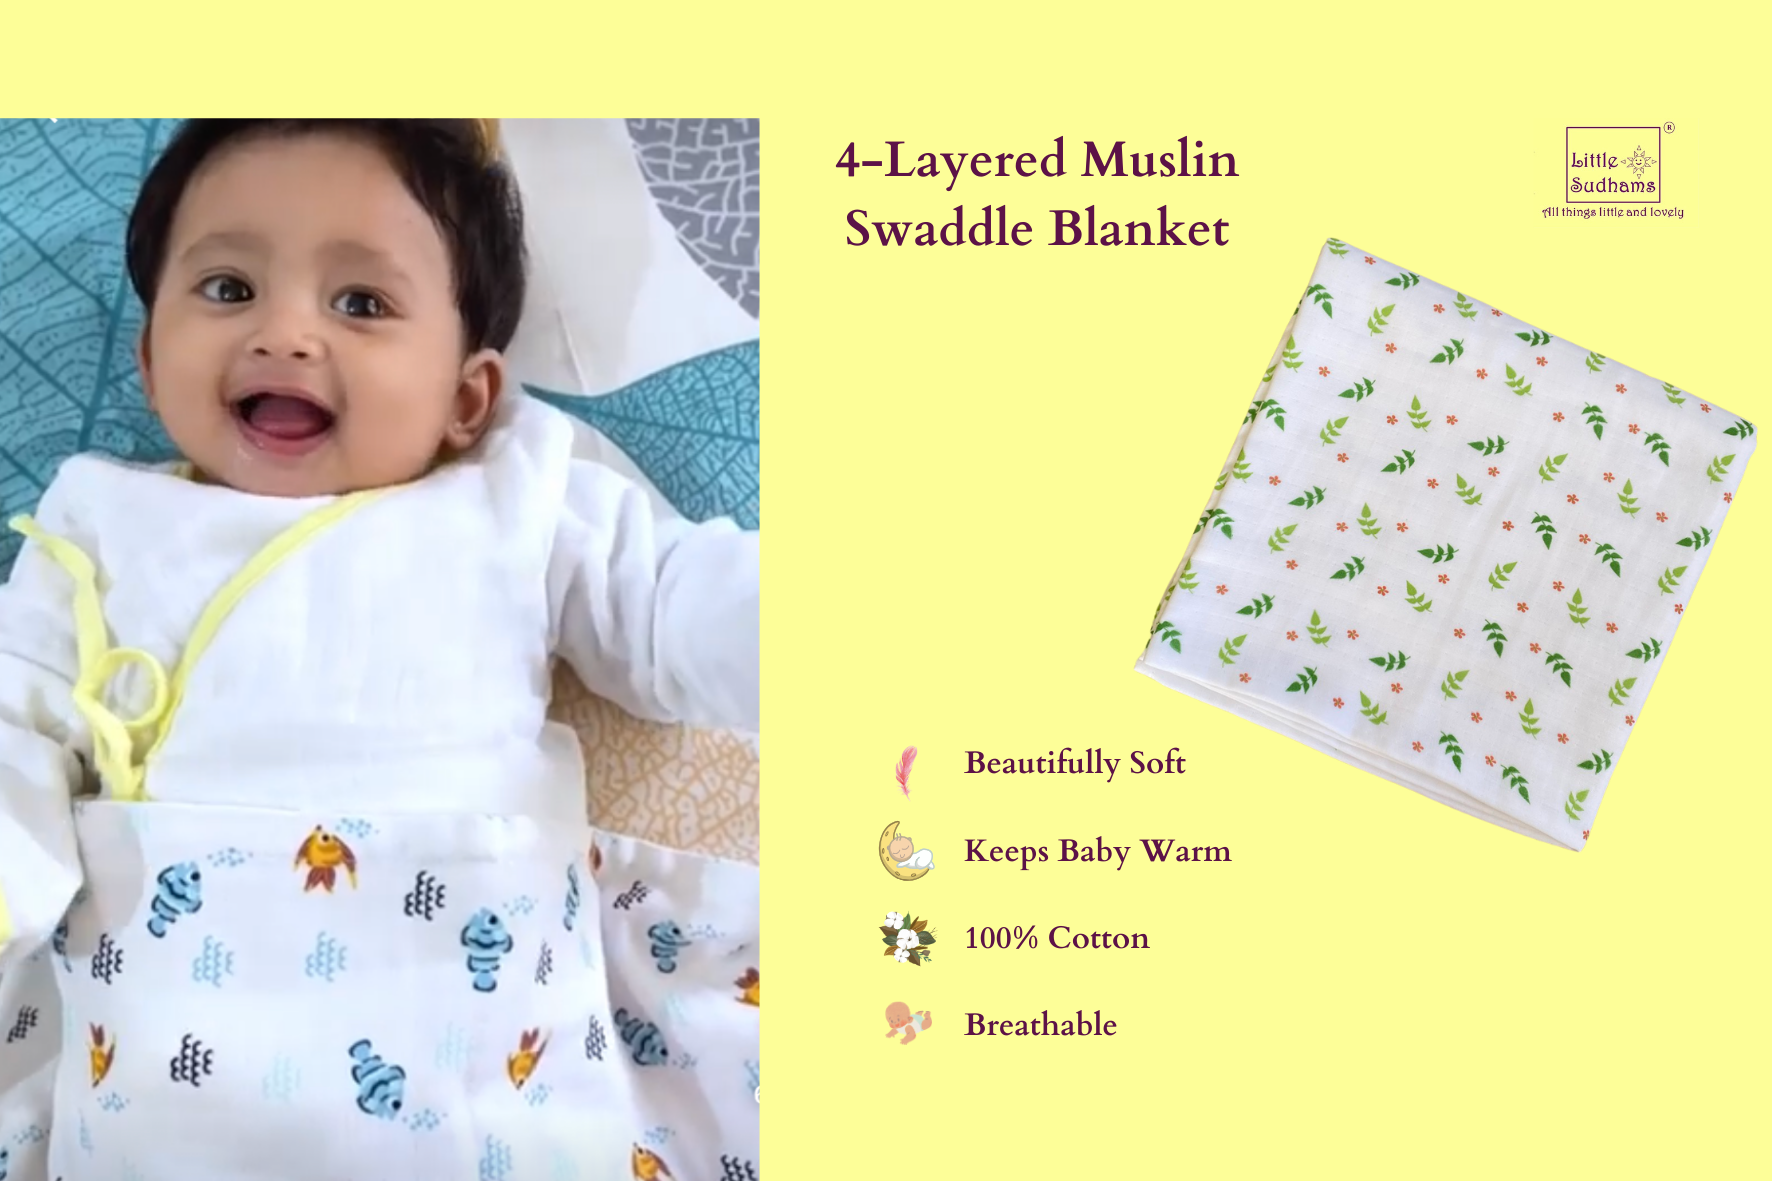 Baby Muslin Swaddle Blanket - Little Sudhams